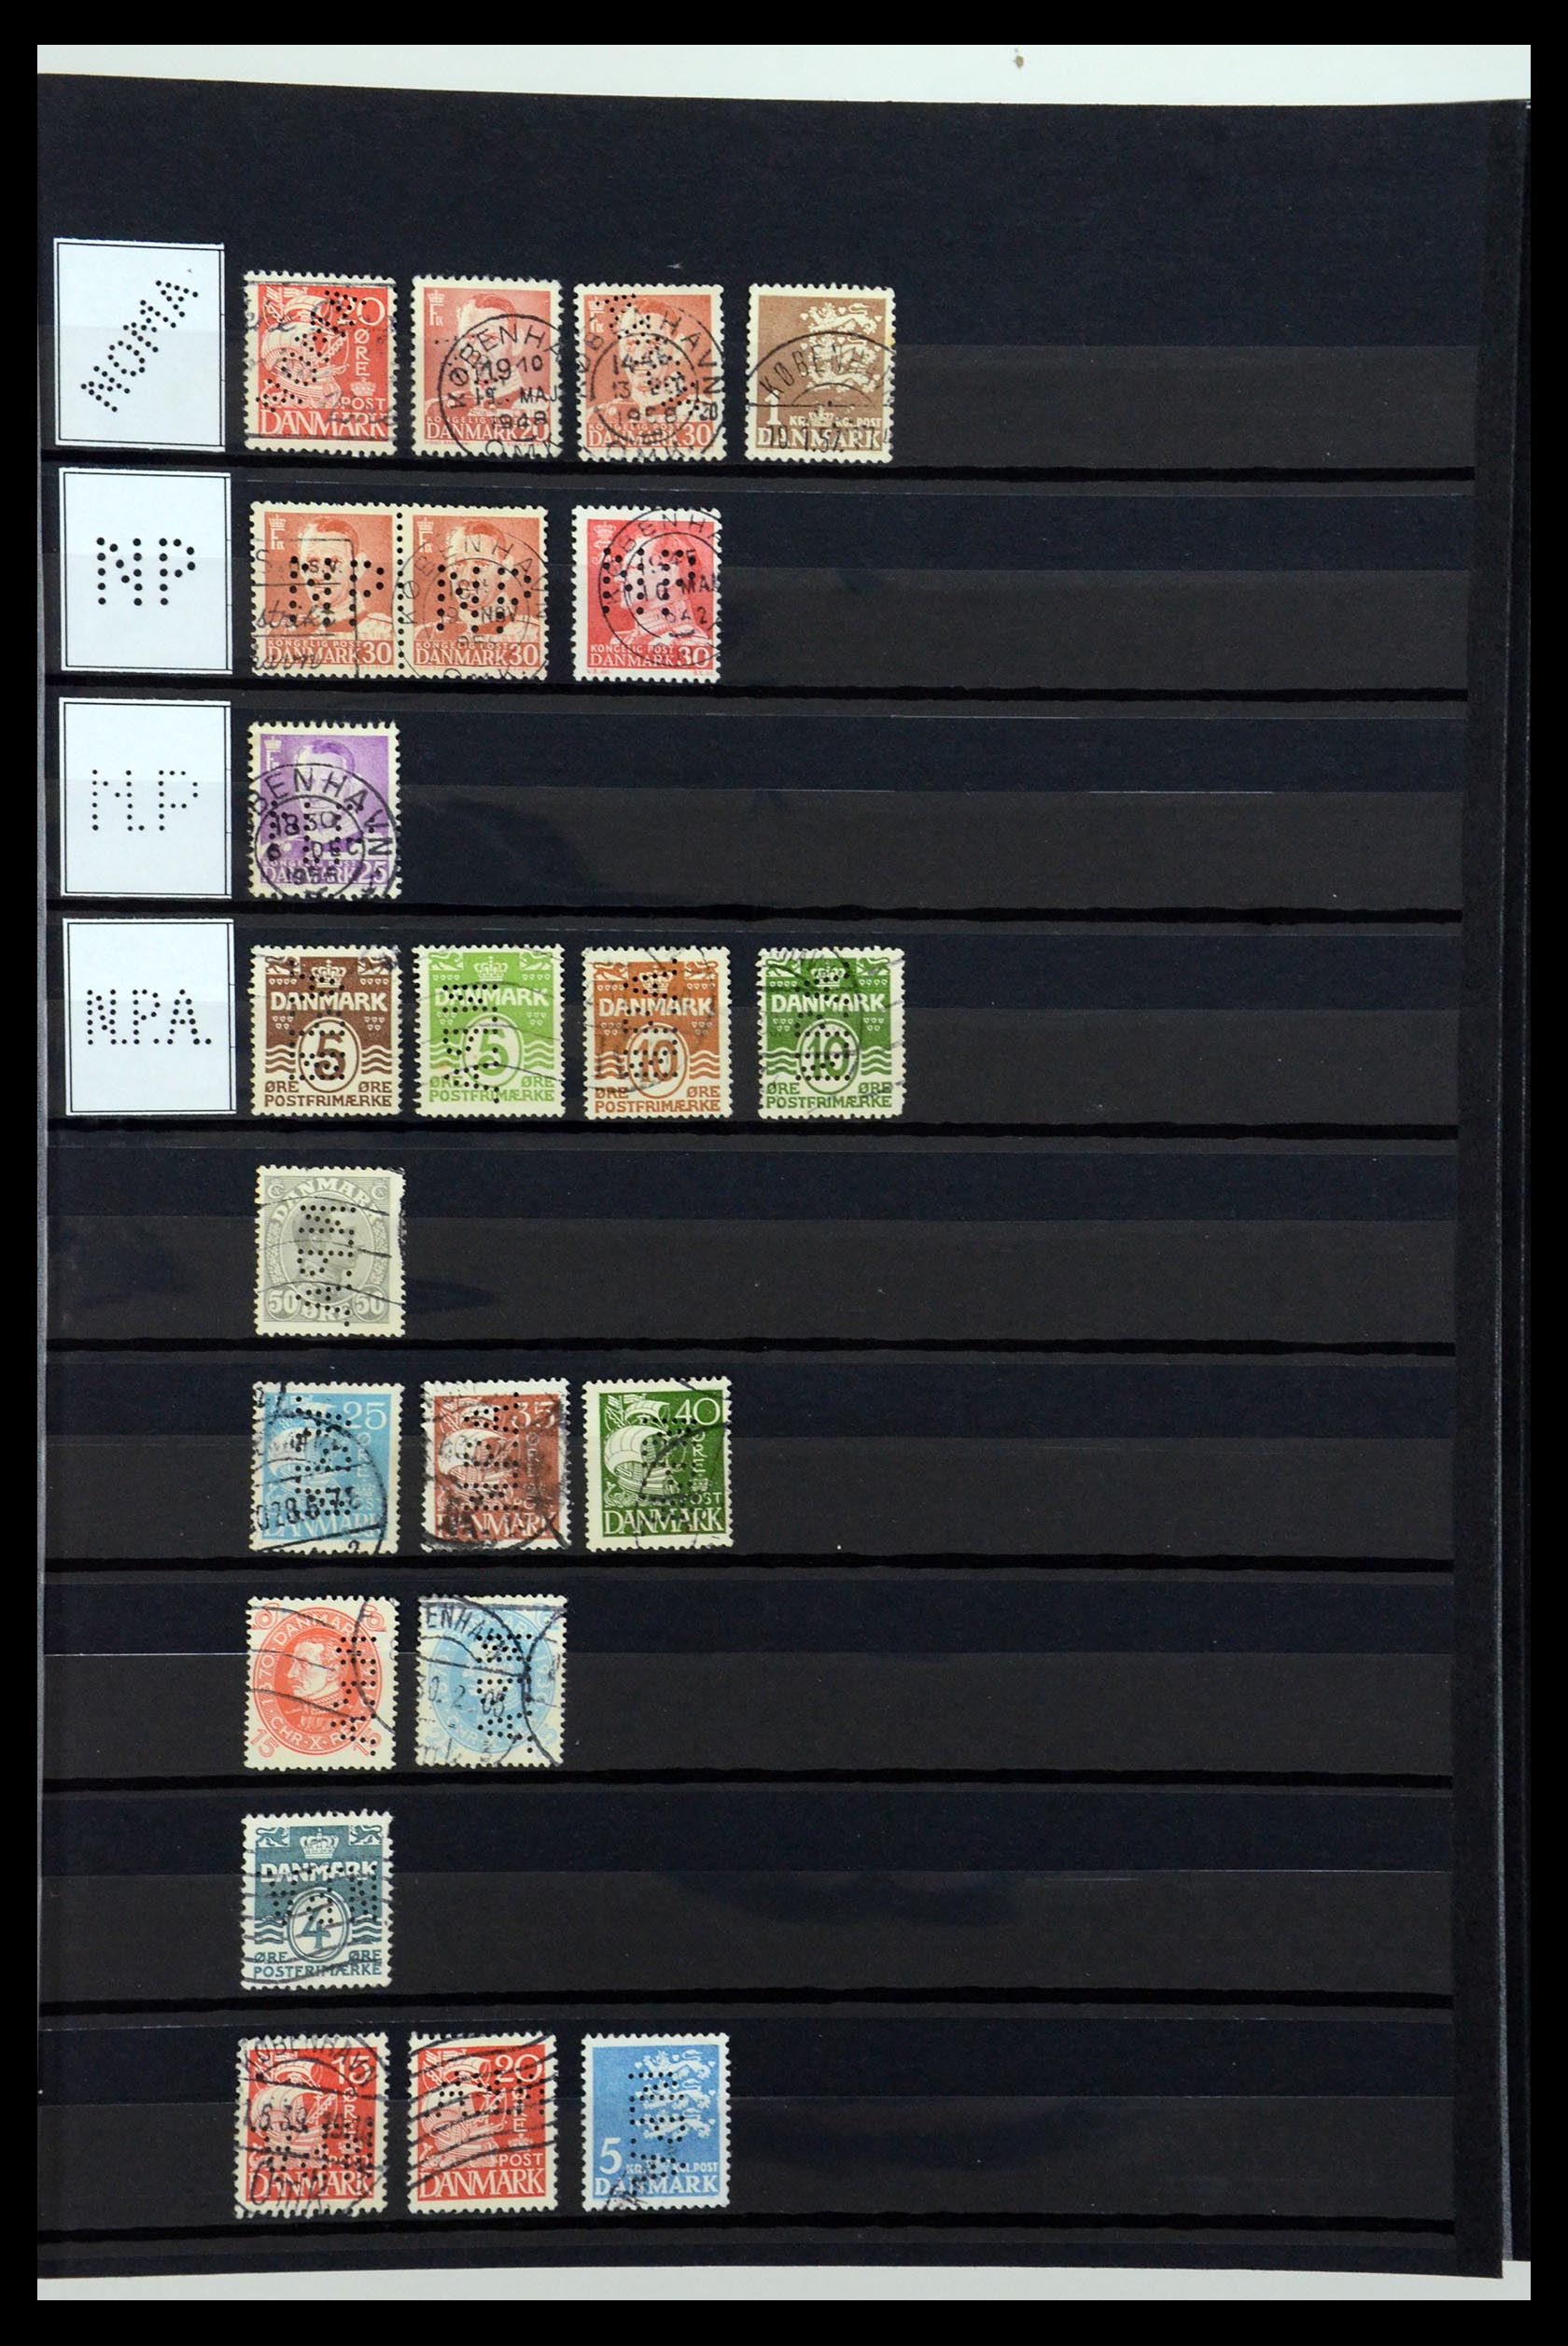 36396 182 - Postzegelverzameling 36396 Denemarken perfins.